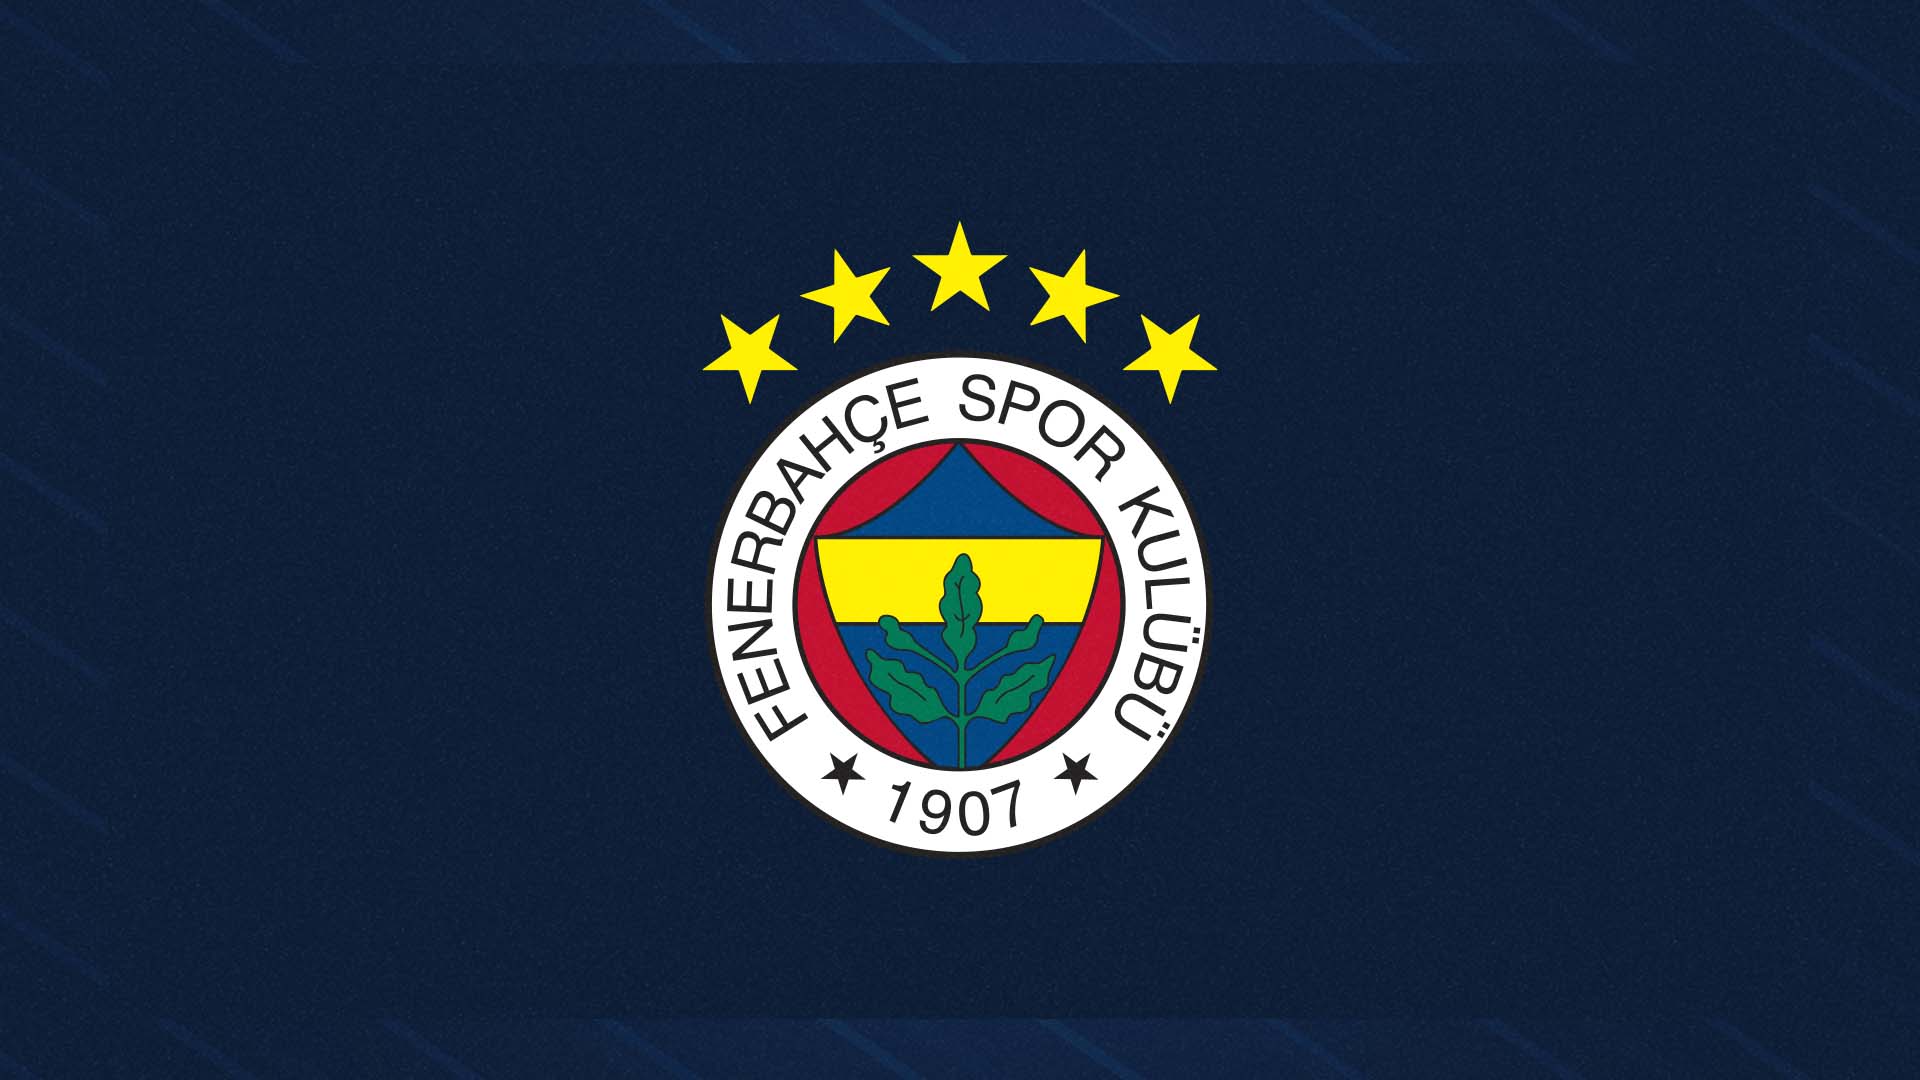 Fenerbahçe, 5 yıldızlı logonun kullanılacağını duyurdu